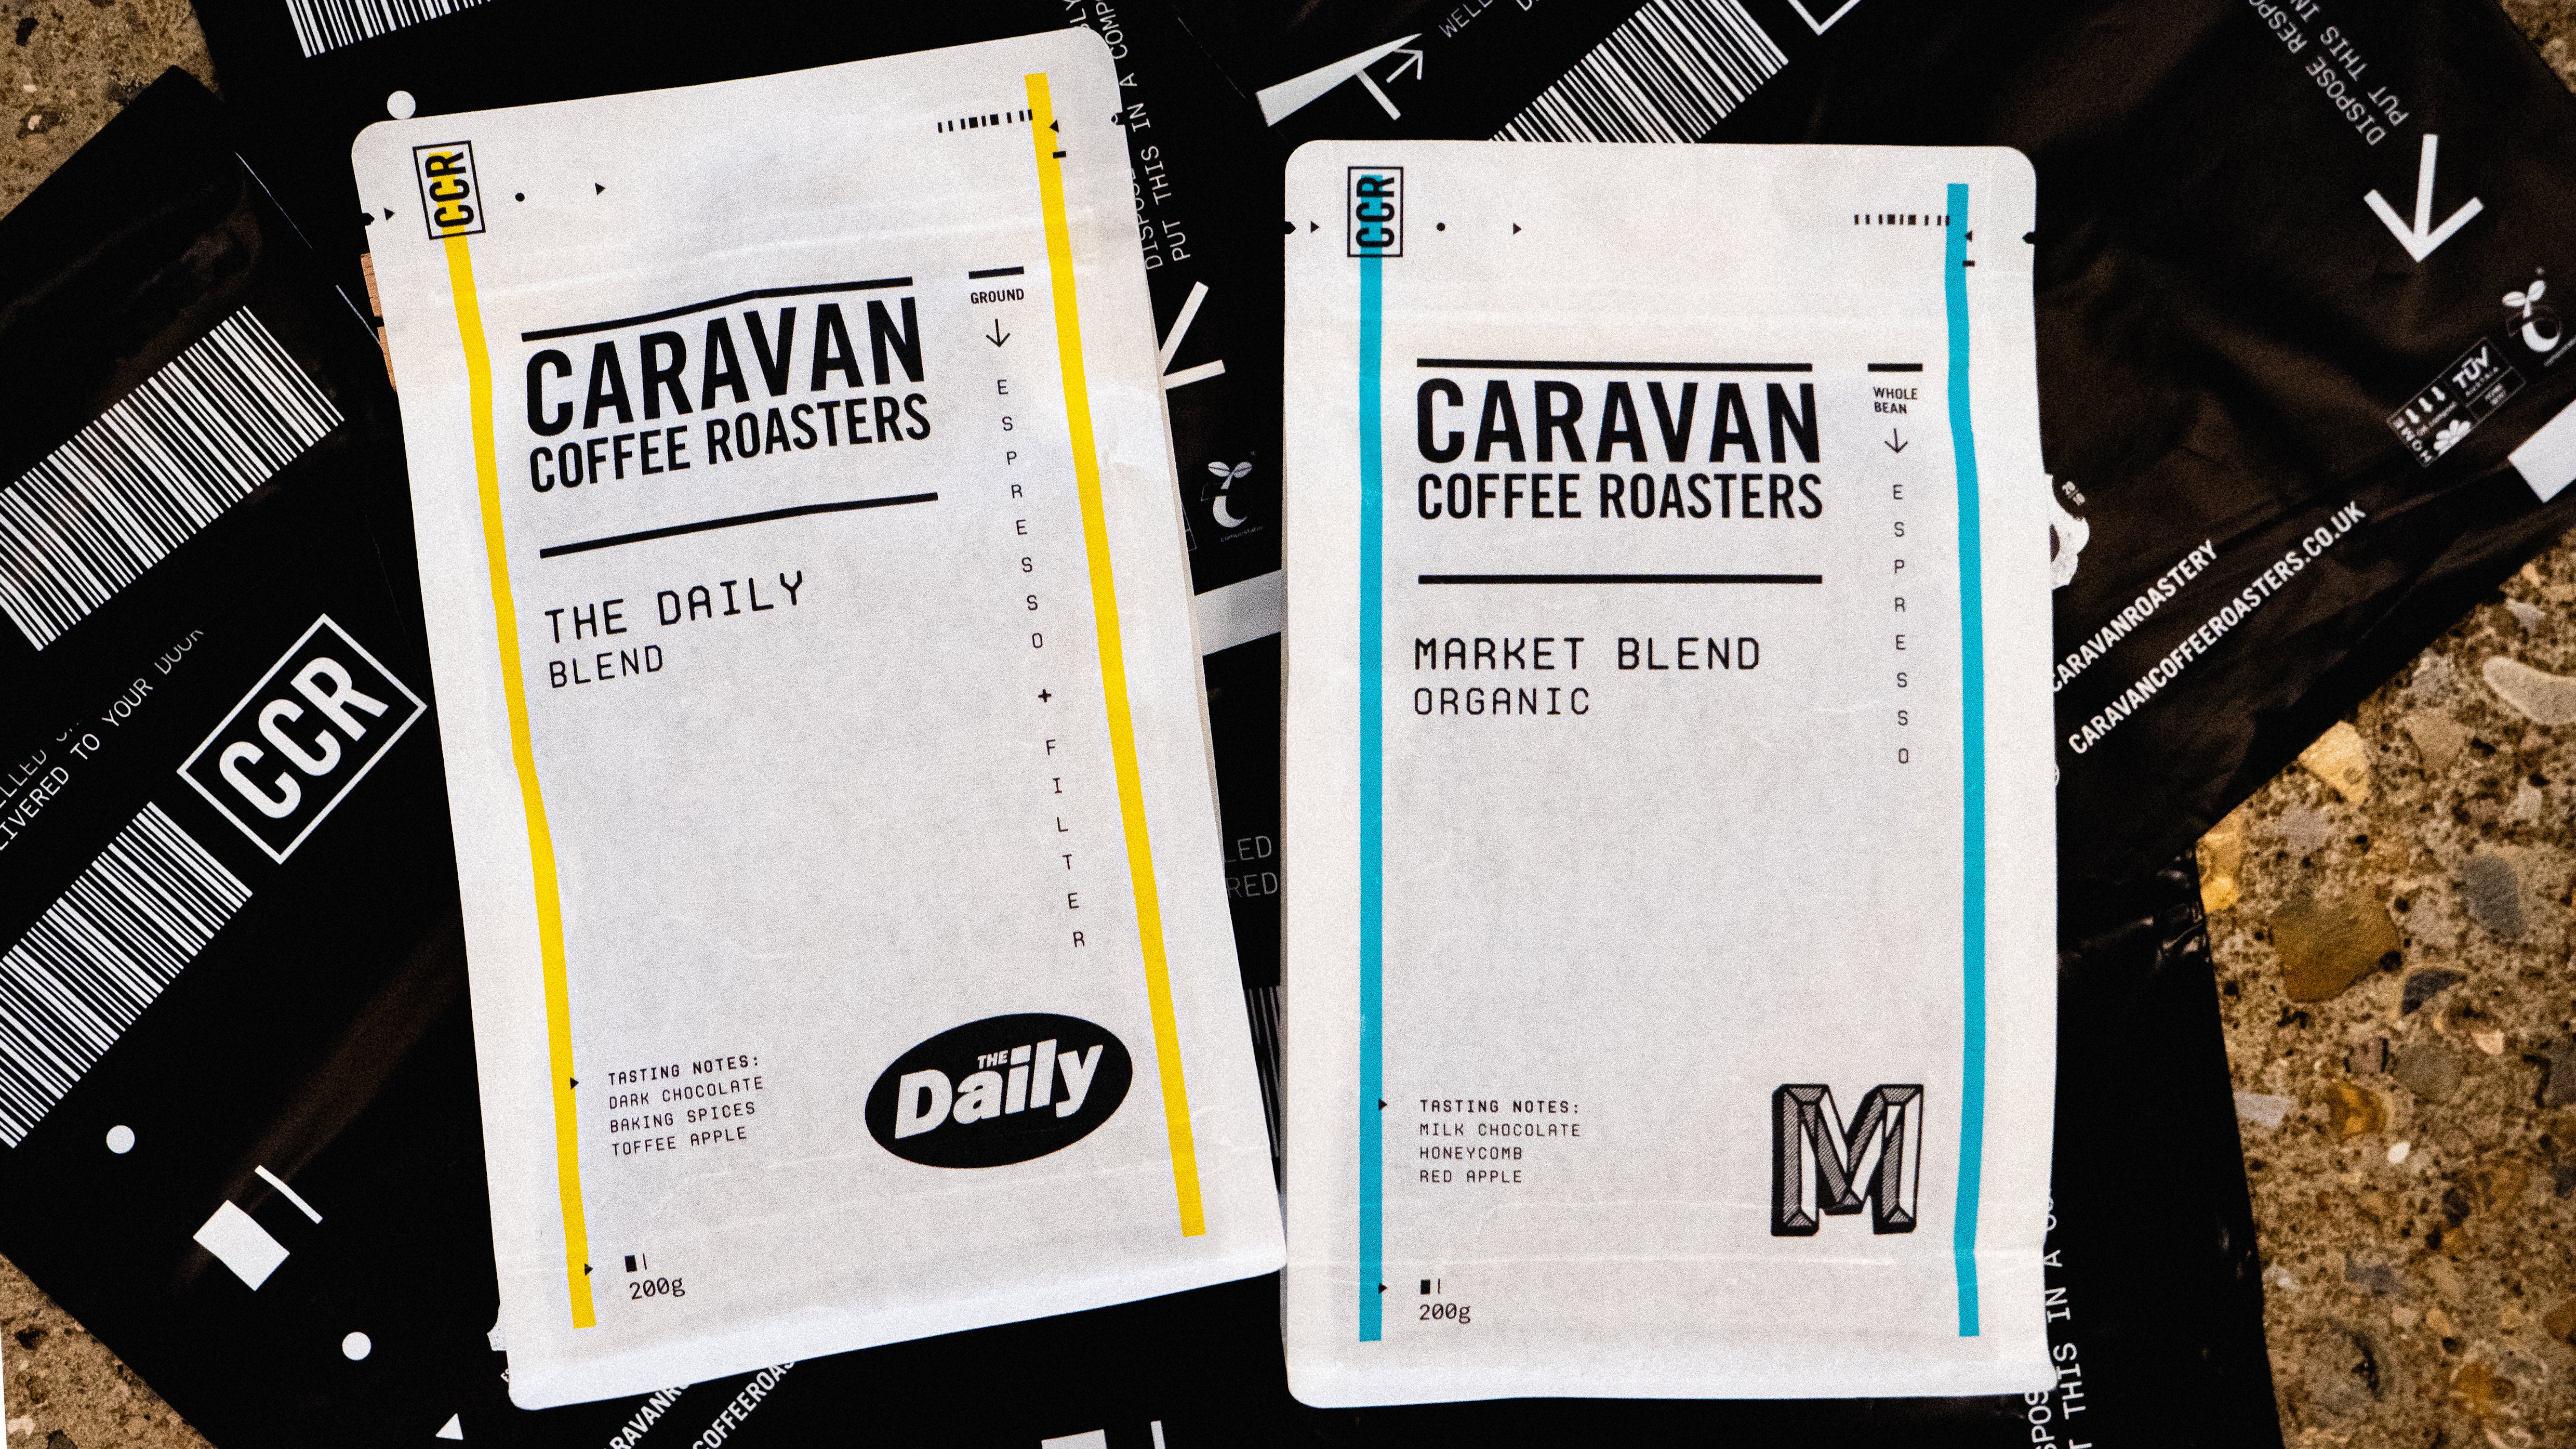 Caravan Coffee Roasters - Market Blend Organic (6x200g Bags) // Stores Supply // Caravan